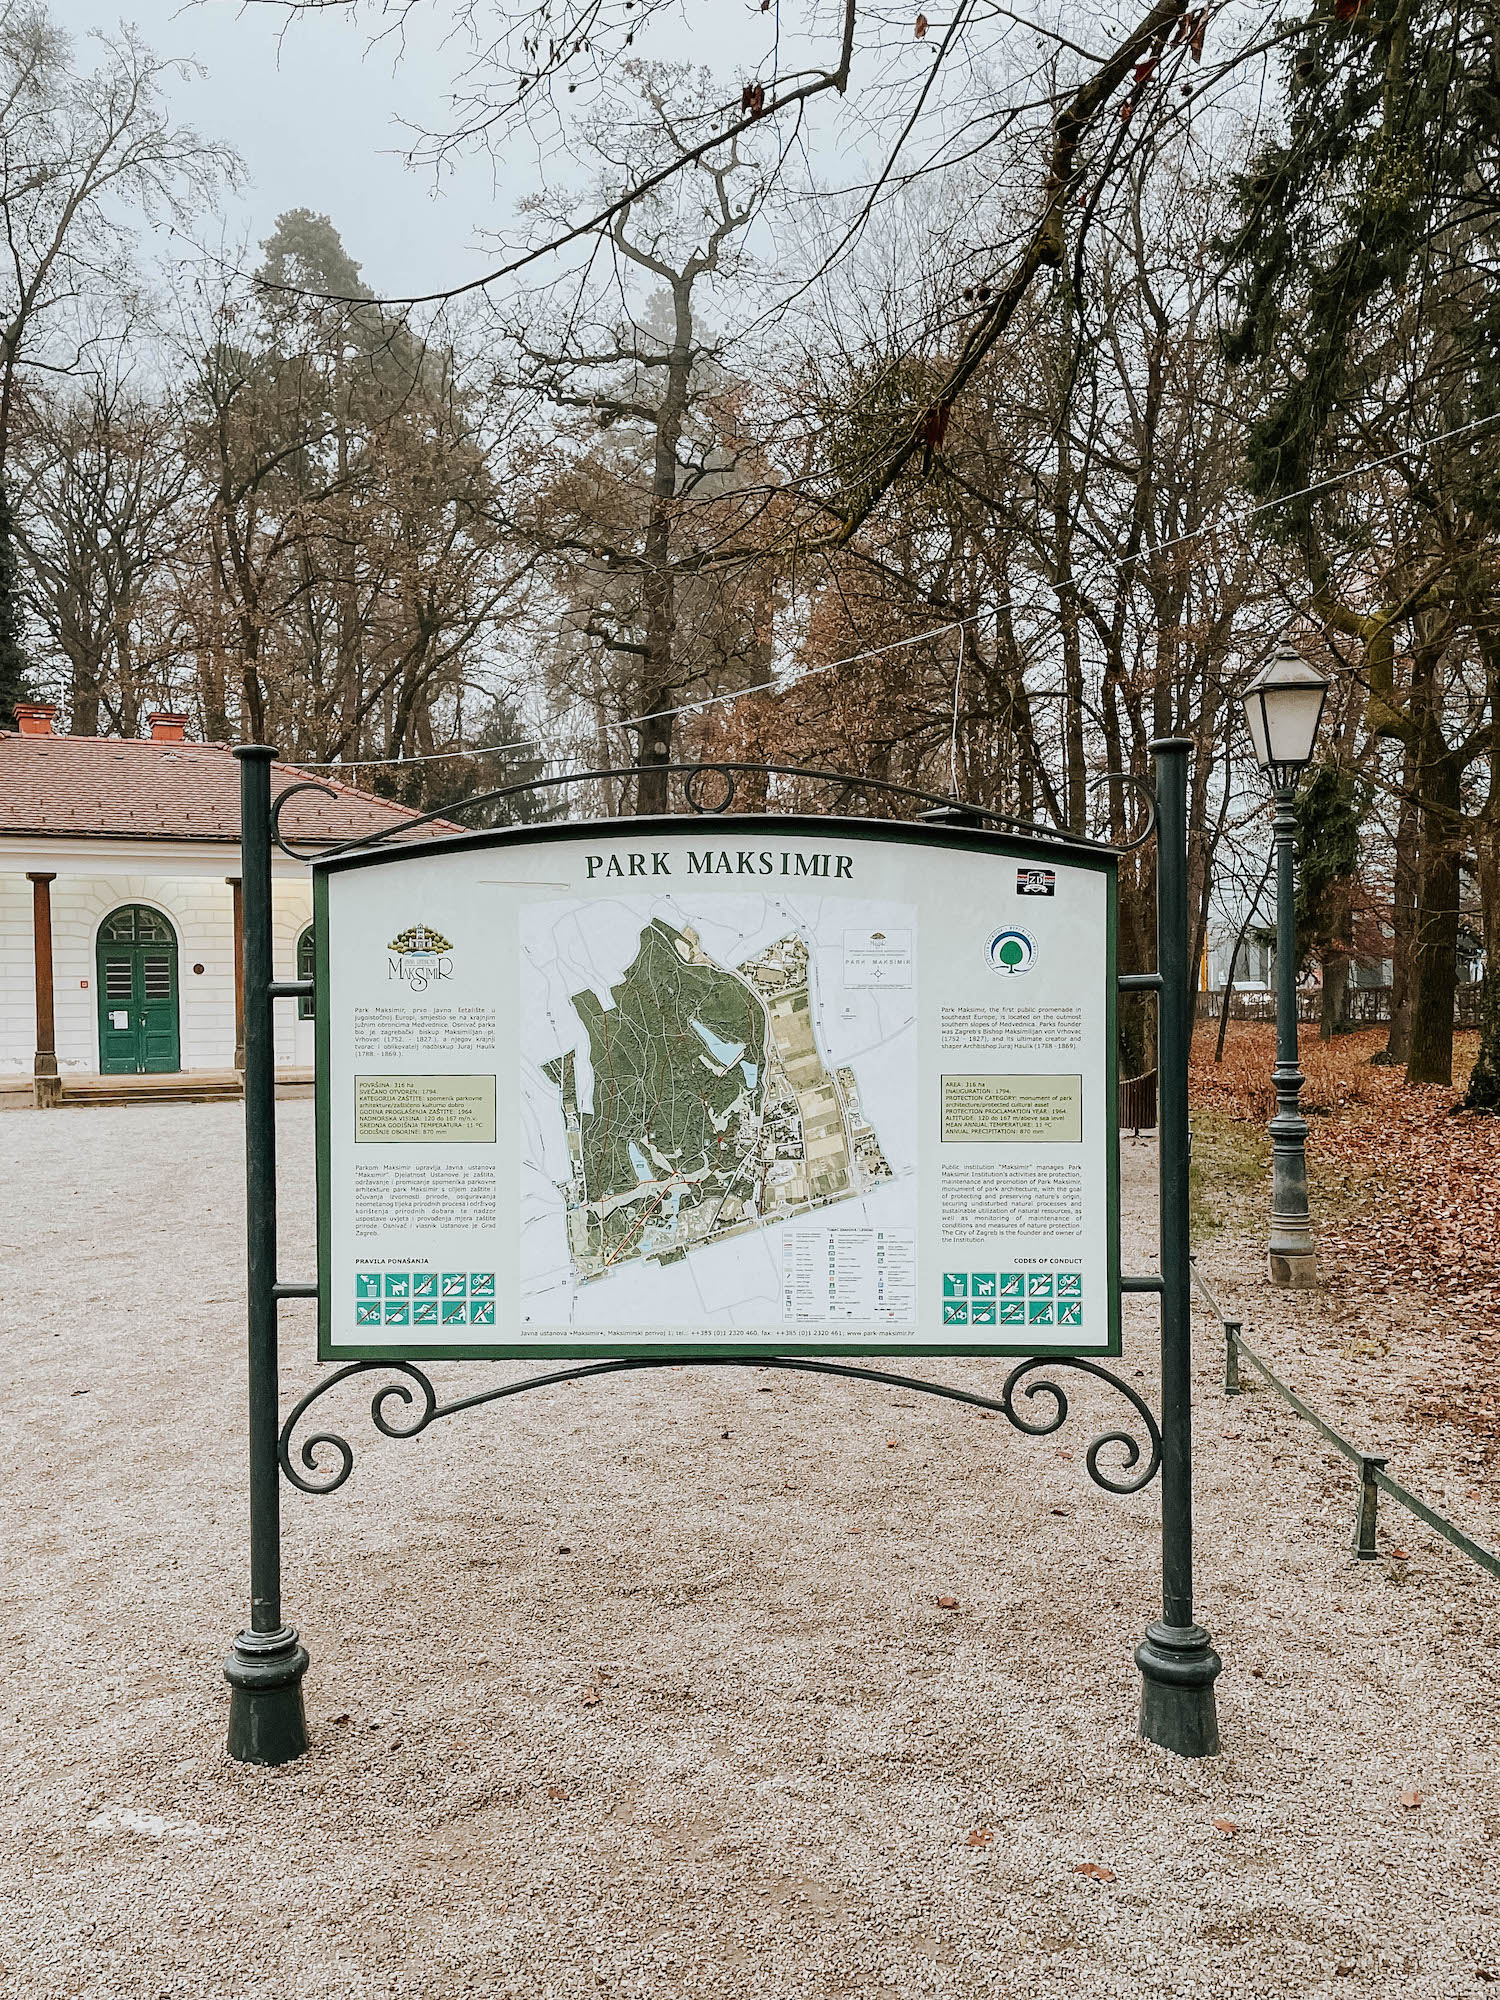 Maksimir Park is Zagreb’s oldest public park